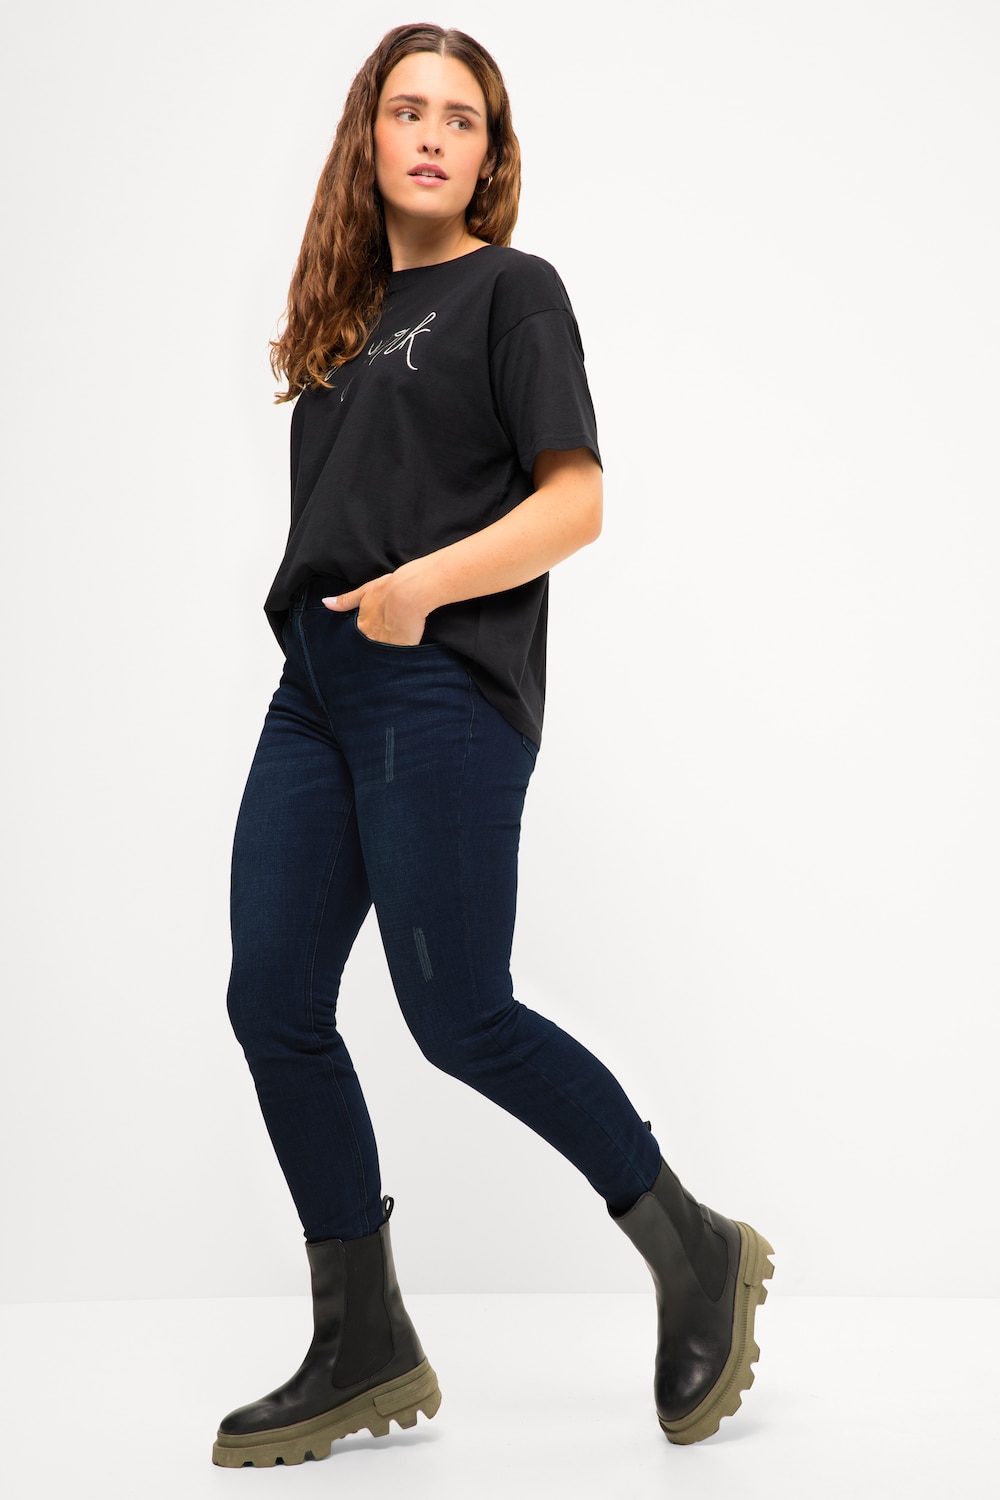 Grote Maten Skinny jeans, Dames, blauw, Maat: 44, Viscose/Katoen/Polyester, Studio Untold